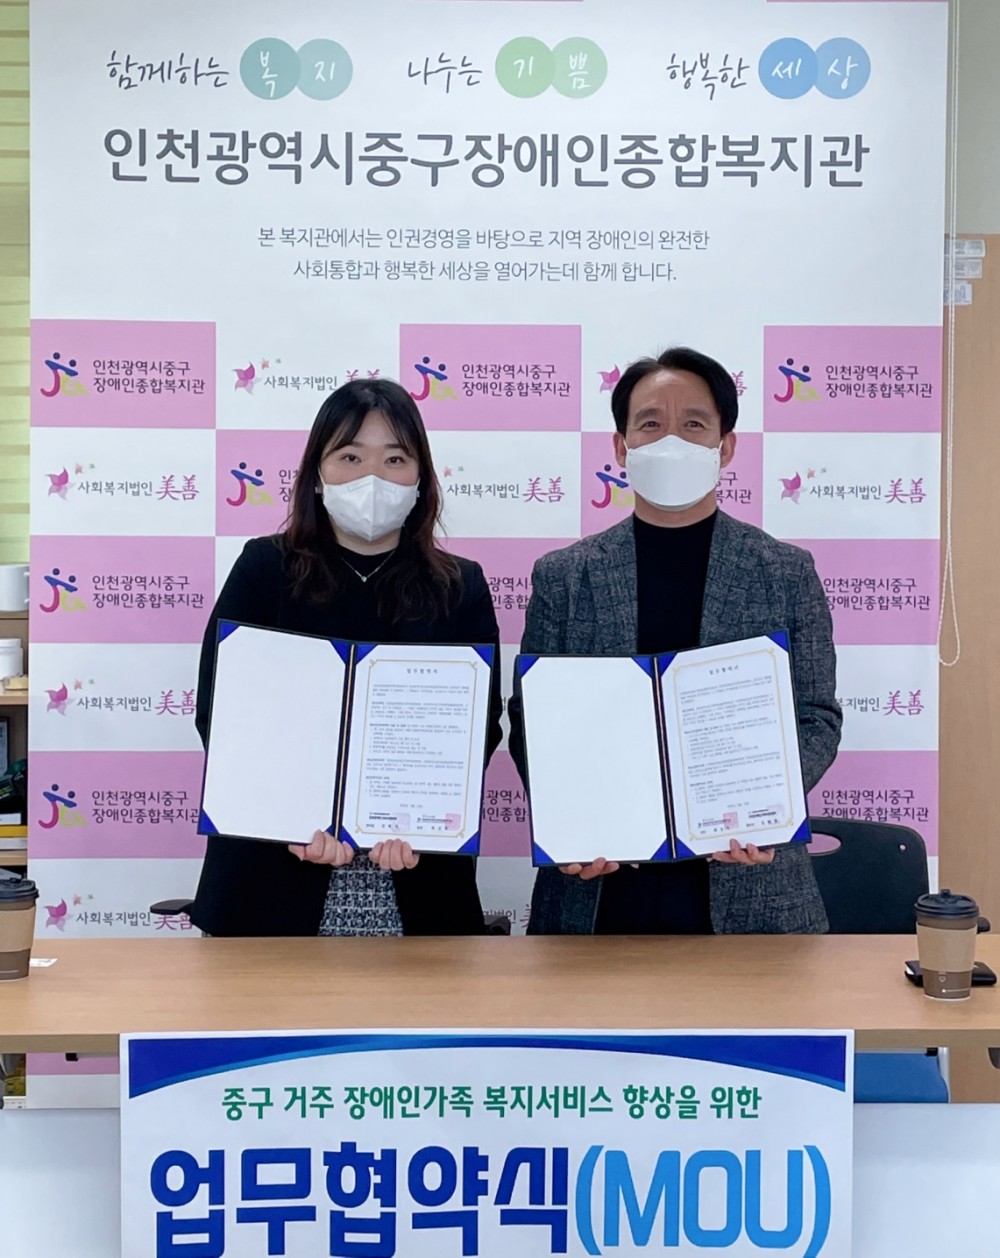 ▴인천광역시중구장애인종합복지관과 인천남부장애인가족지원센터가 업무협약을 체결하는 모습. ⓒ인천광역시중구장애인종합복지관